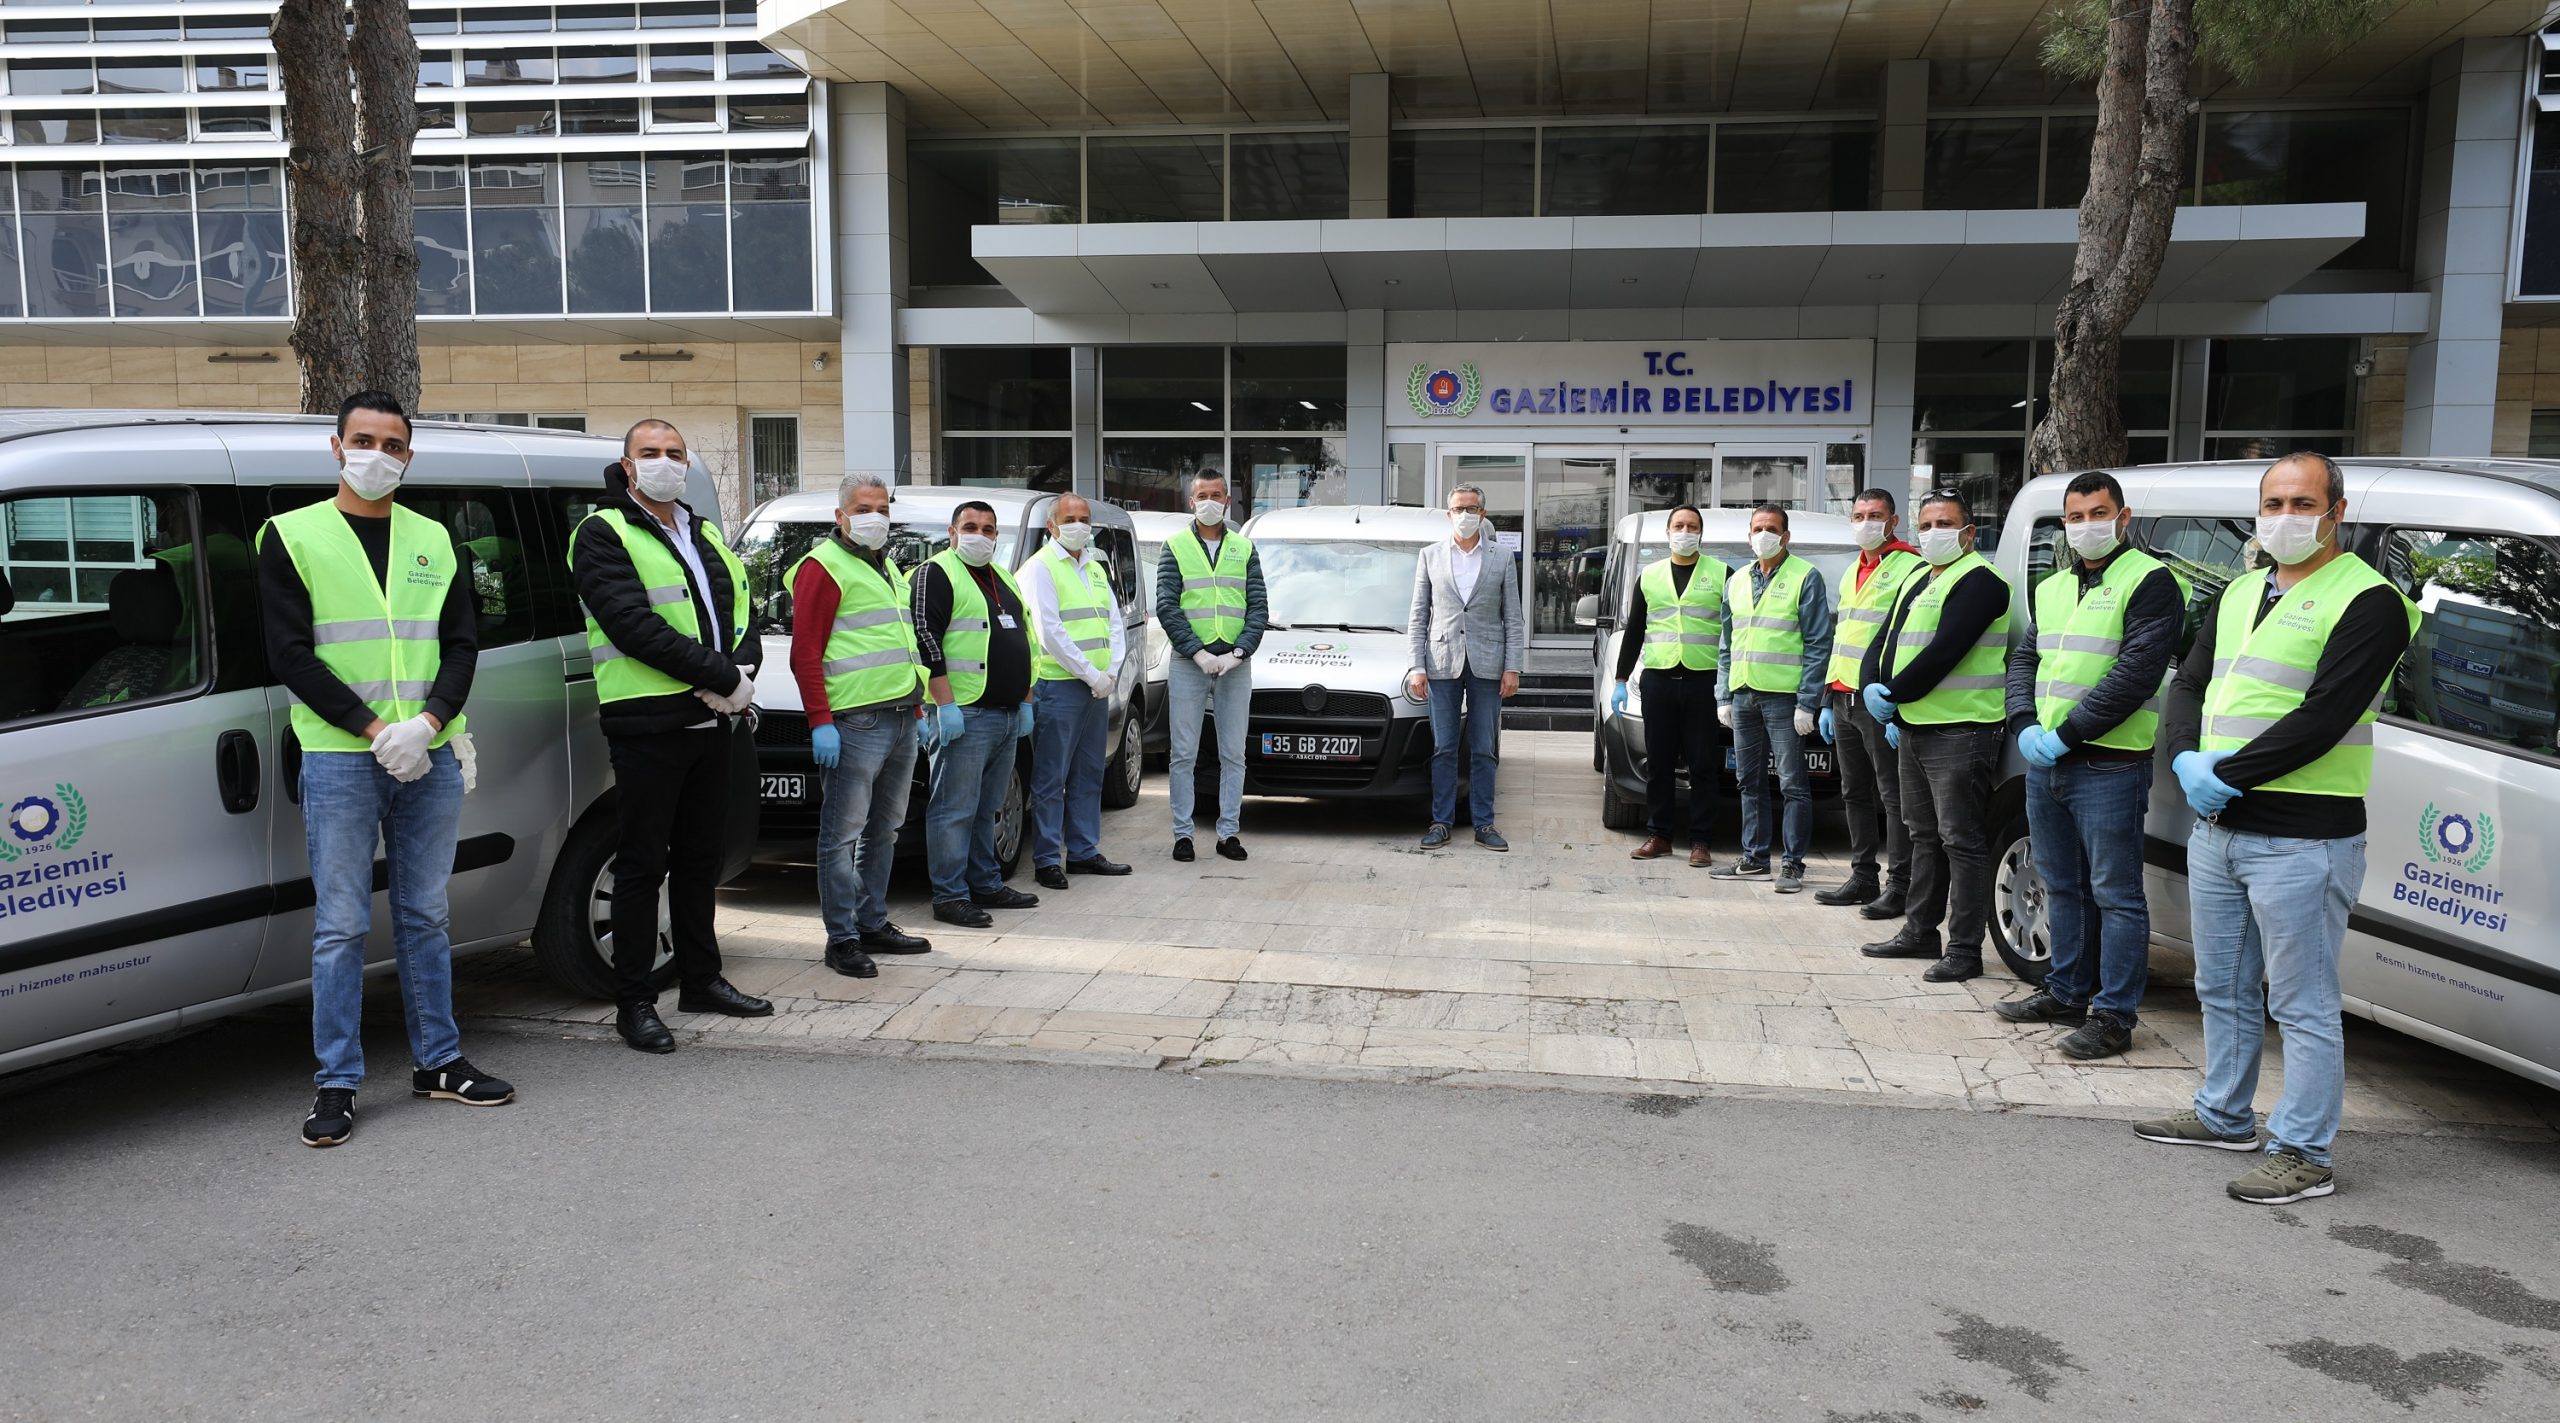 Gaziemir Belediyesi’nin araçları ve şoförleri Vefa Destek Grubu’ndan geri gönderildi